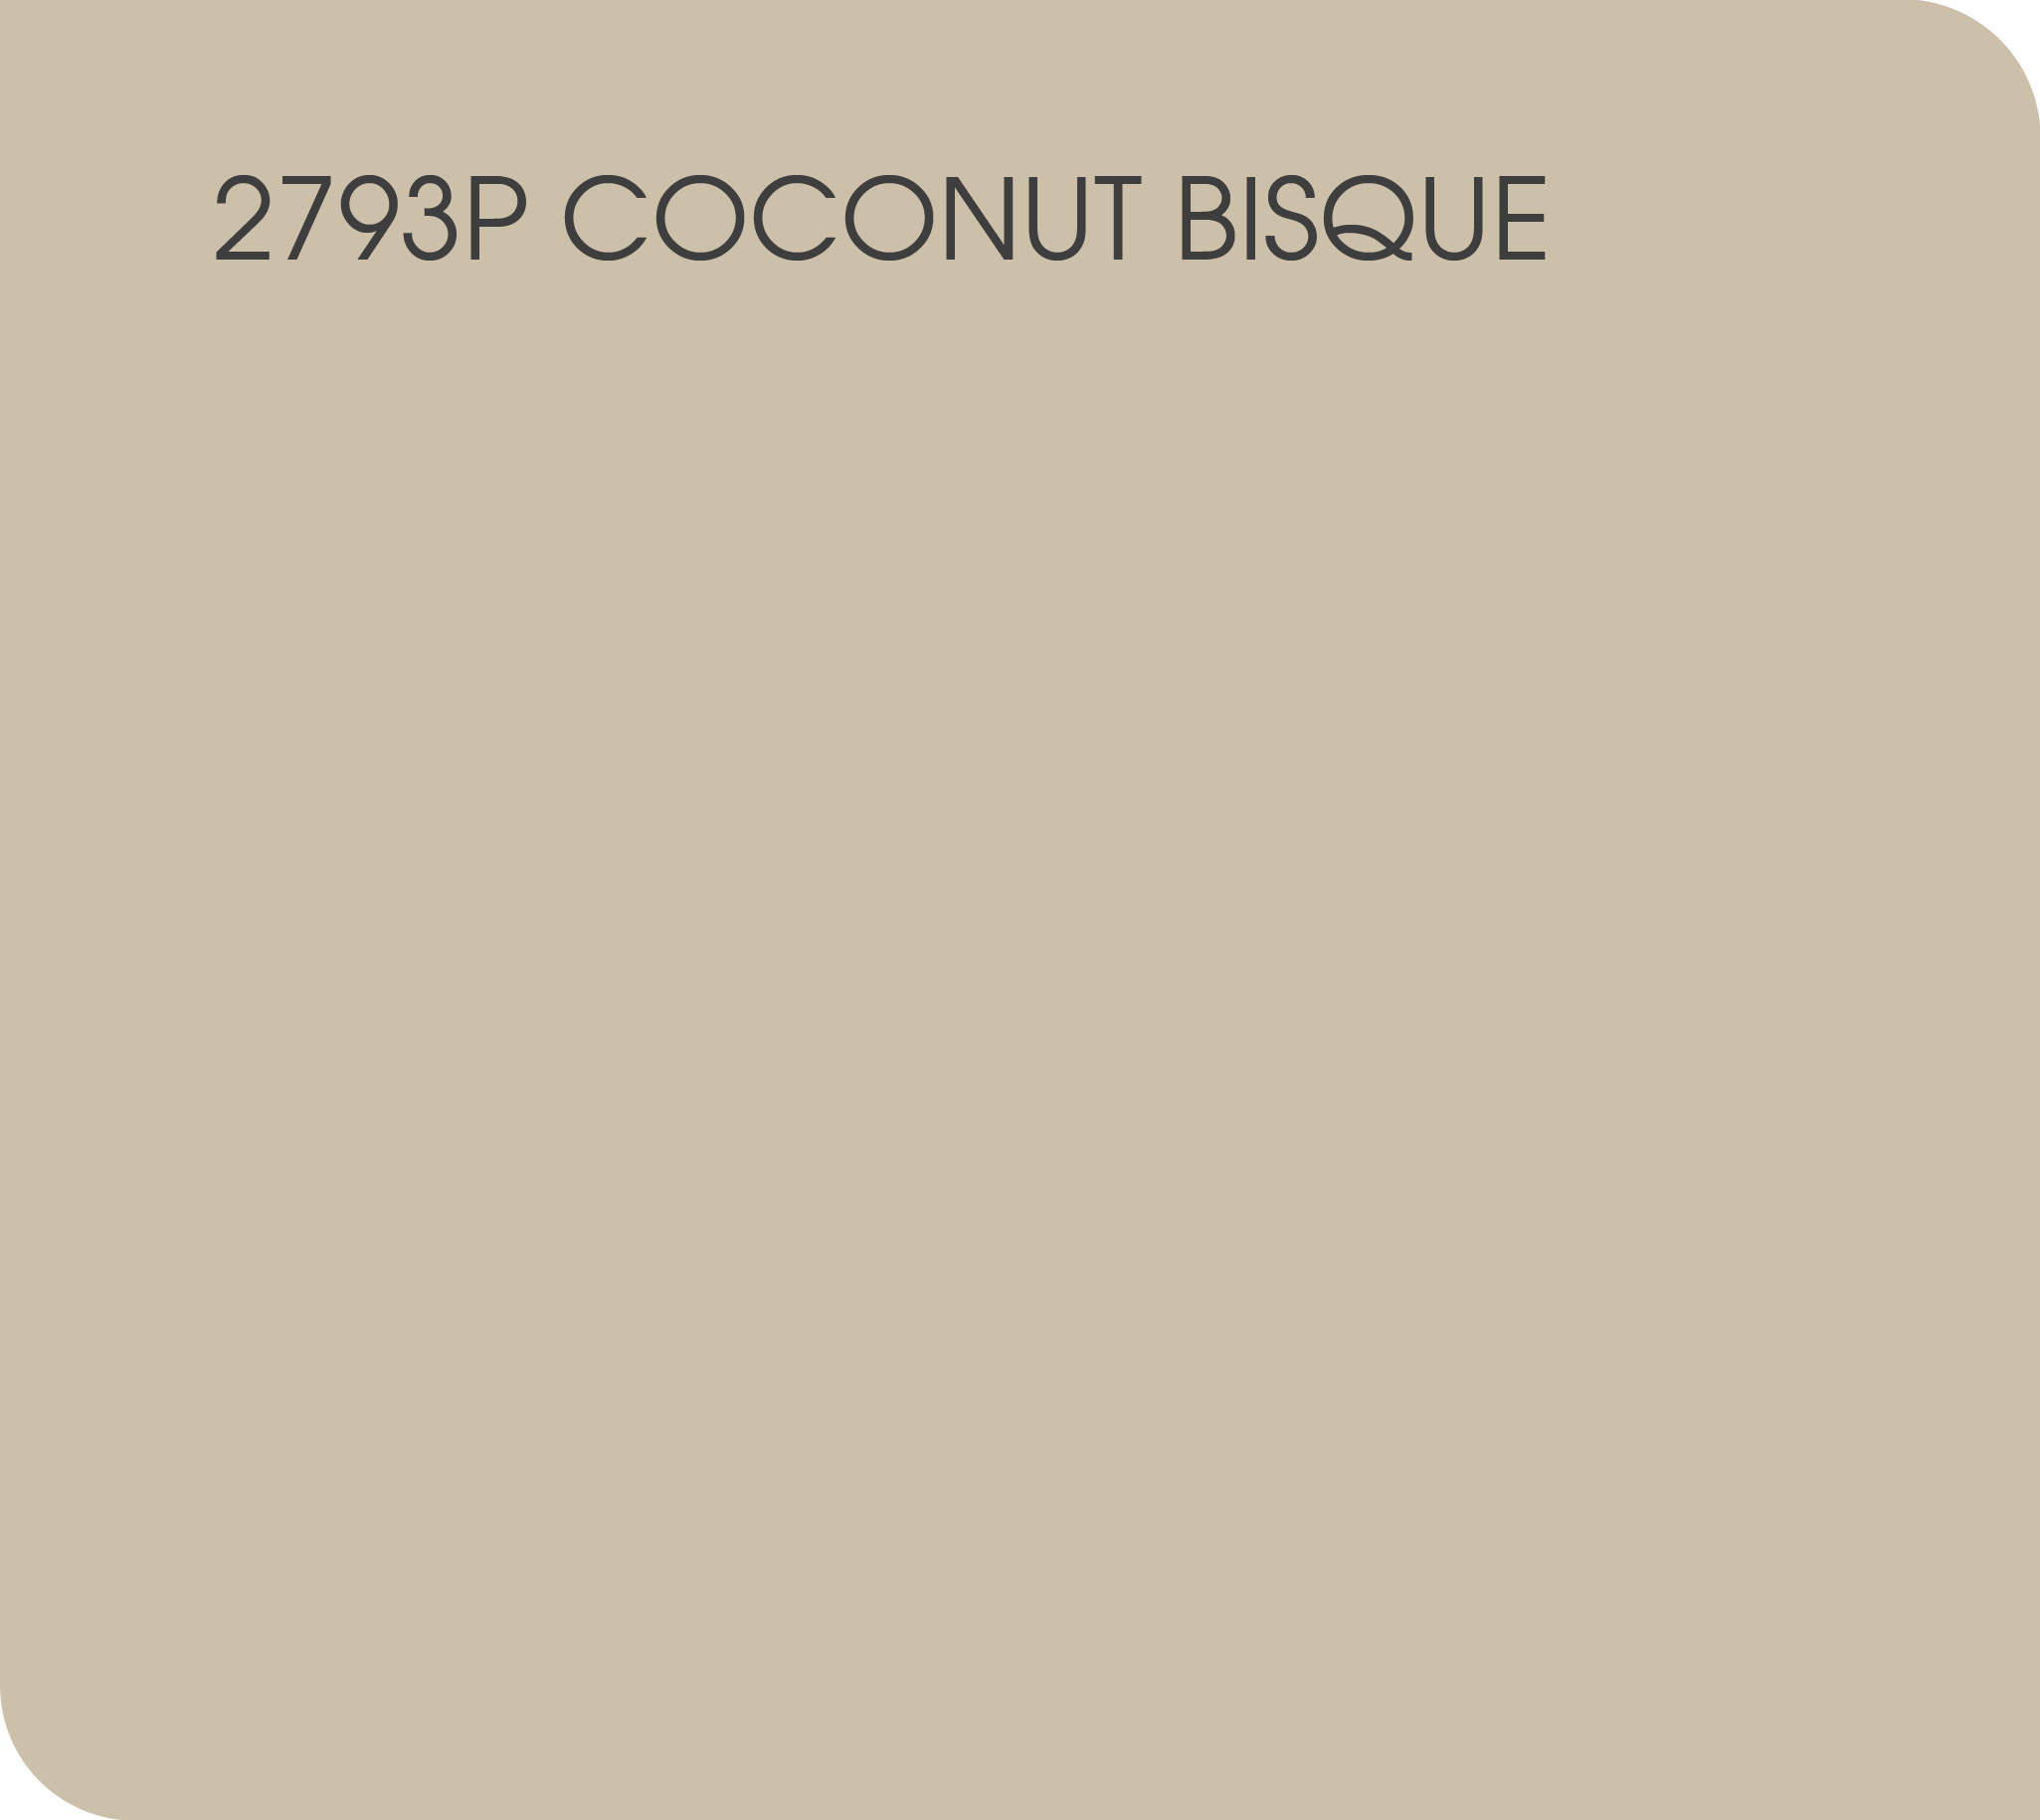 coconut bisque 2793P